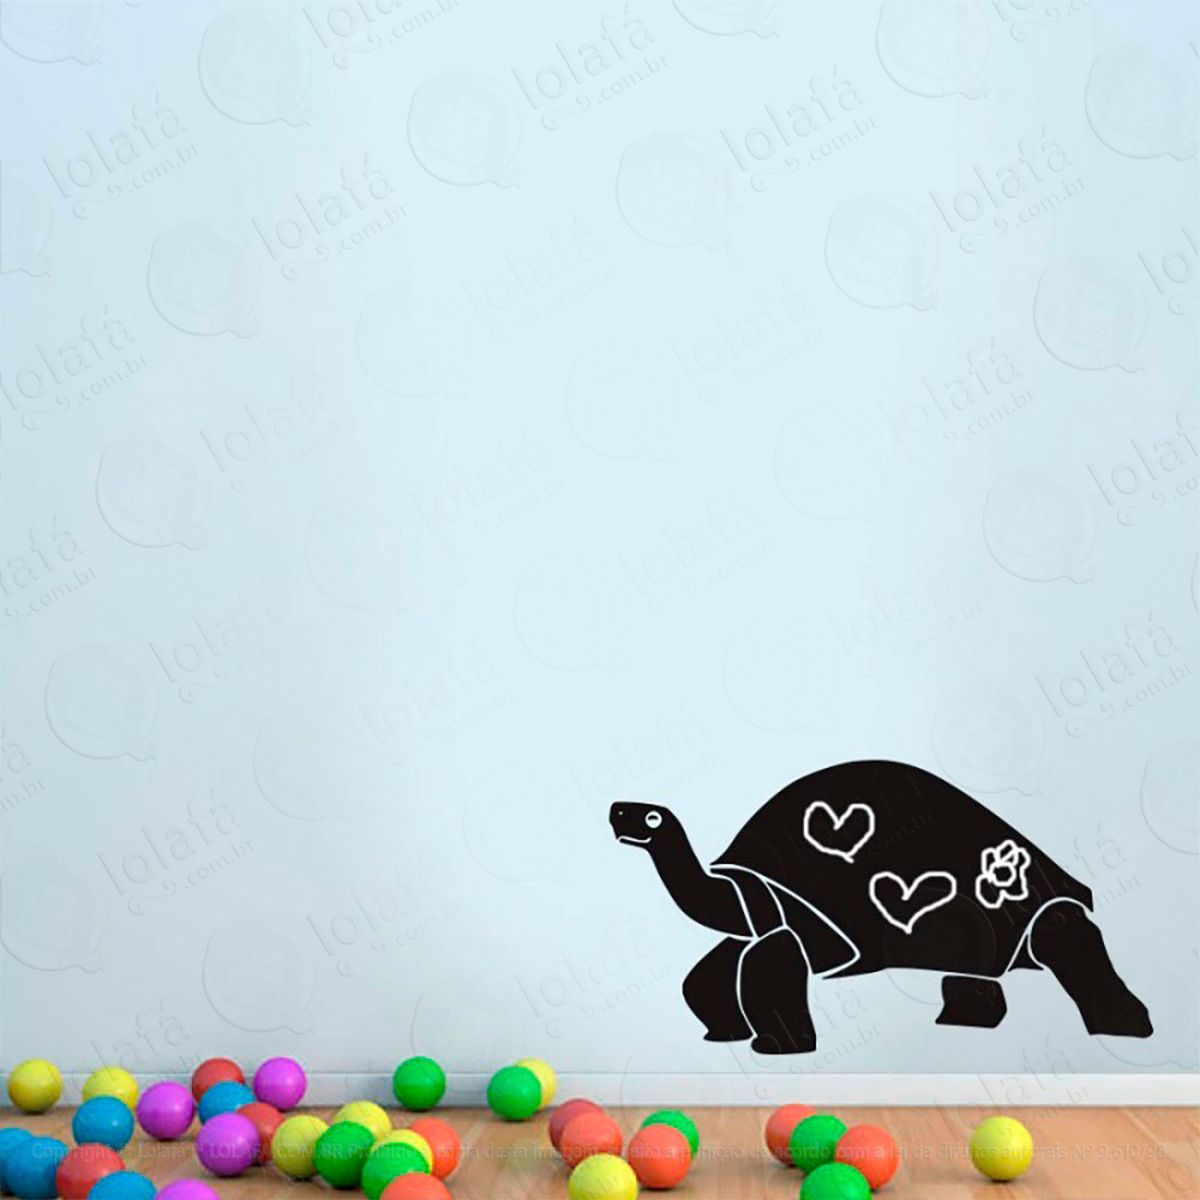 tartaruga adesivo lousa quadro negro de parede para escrever com giz - mod:71